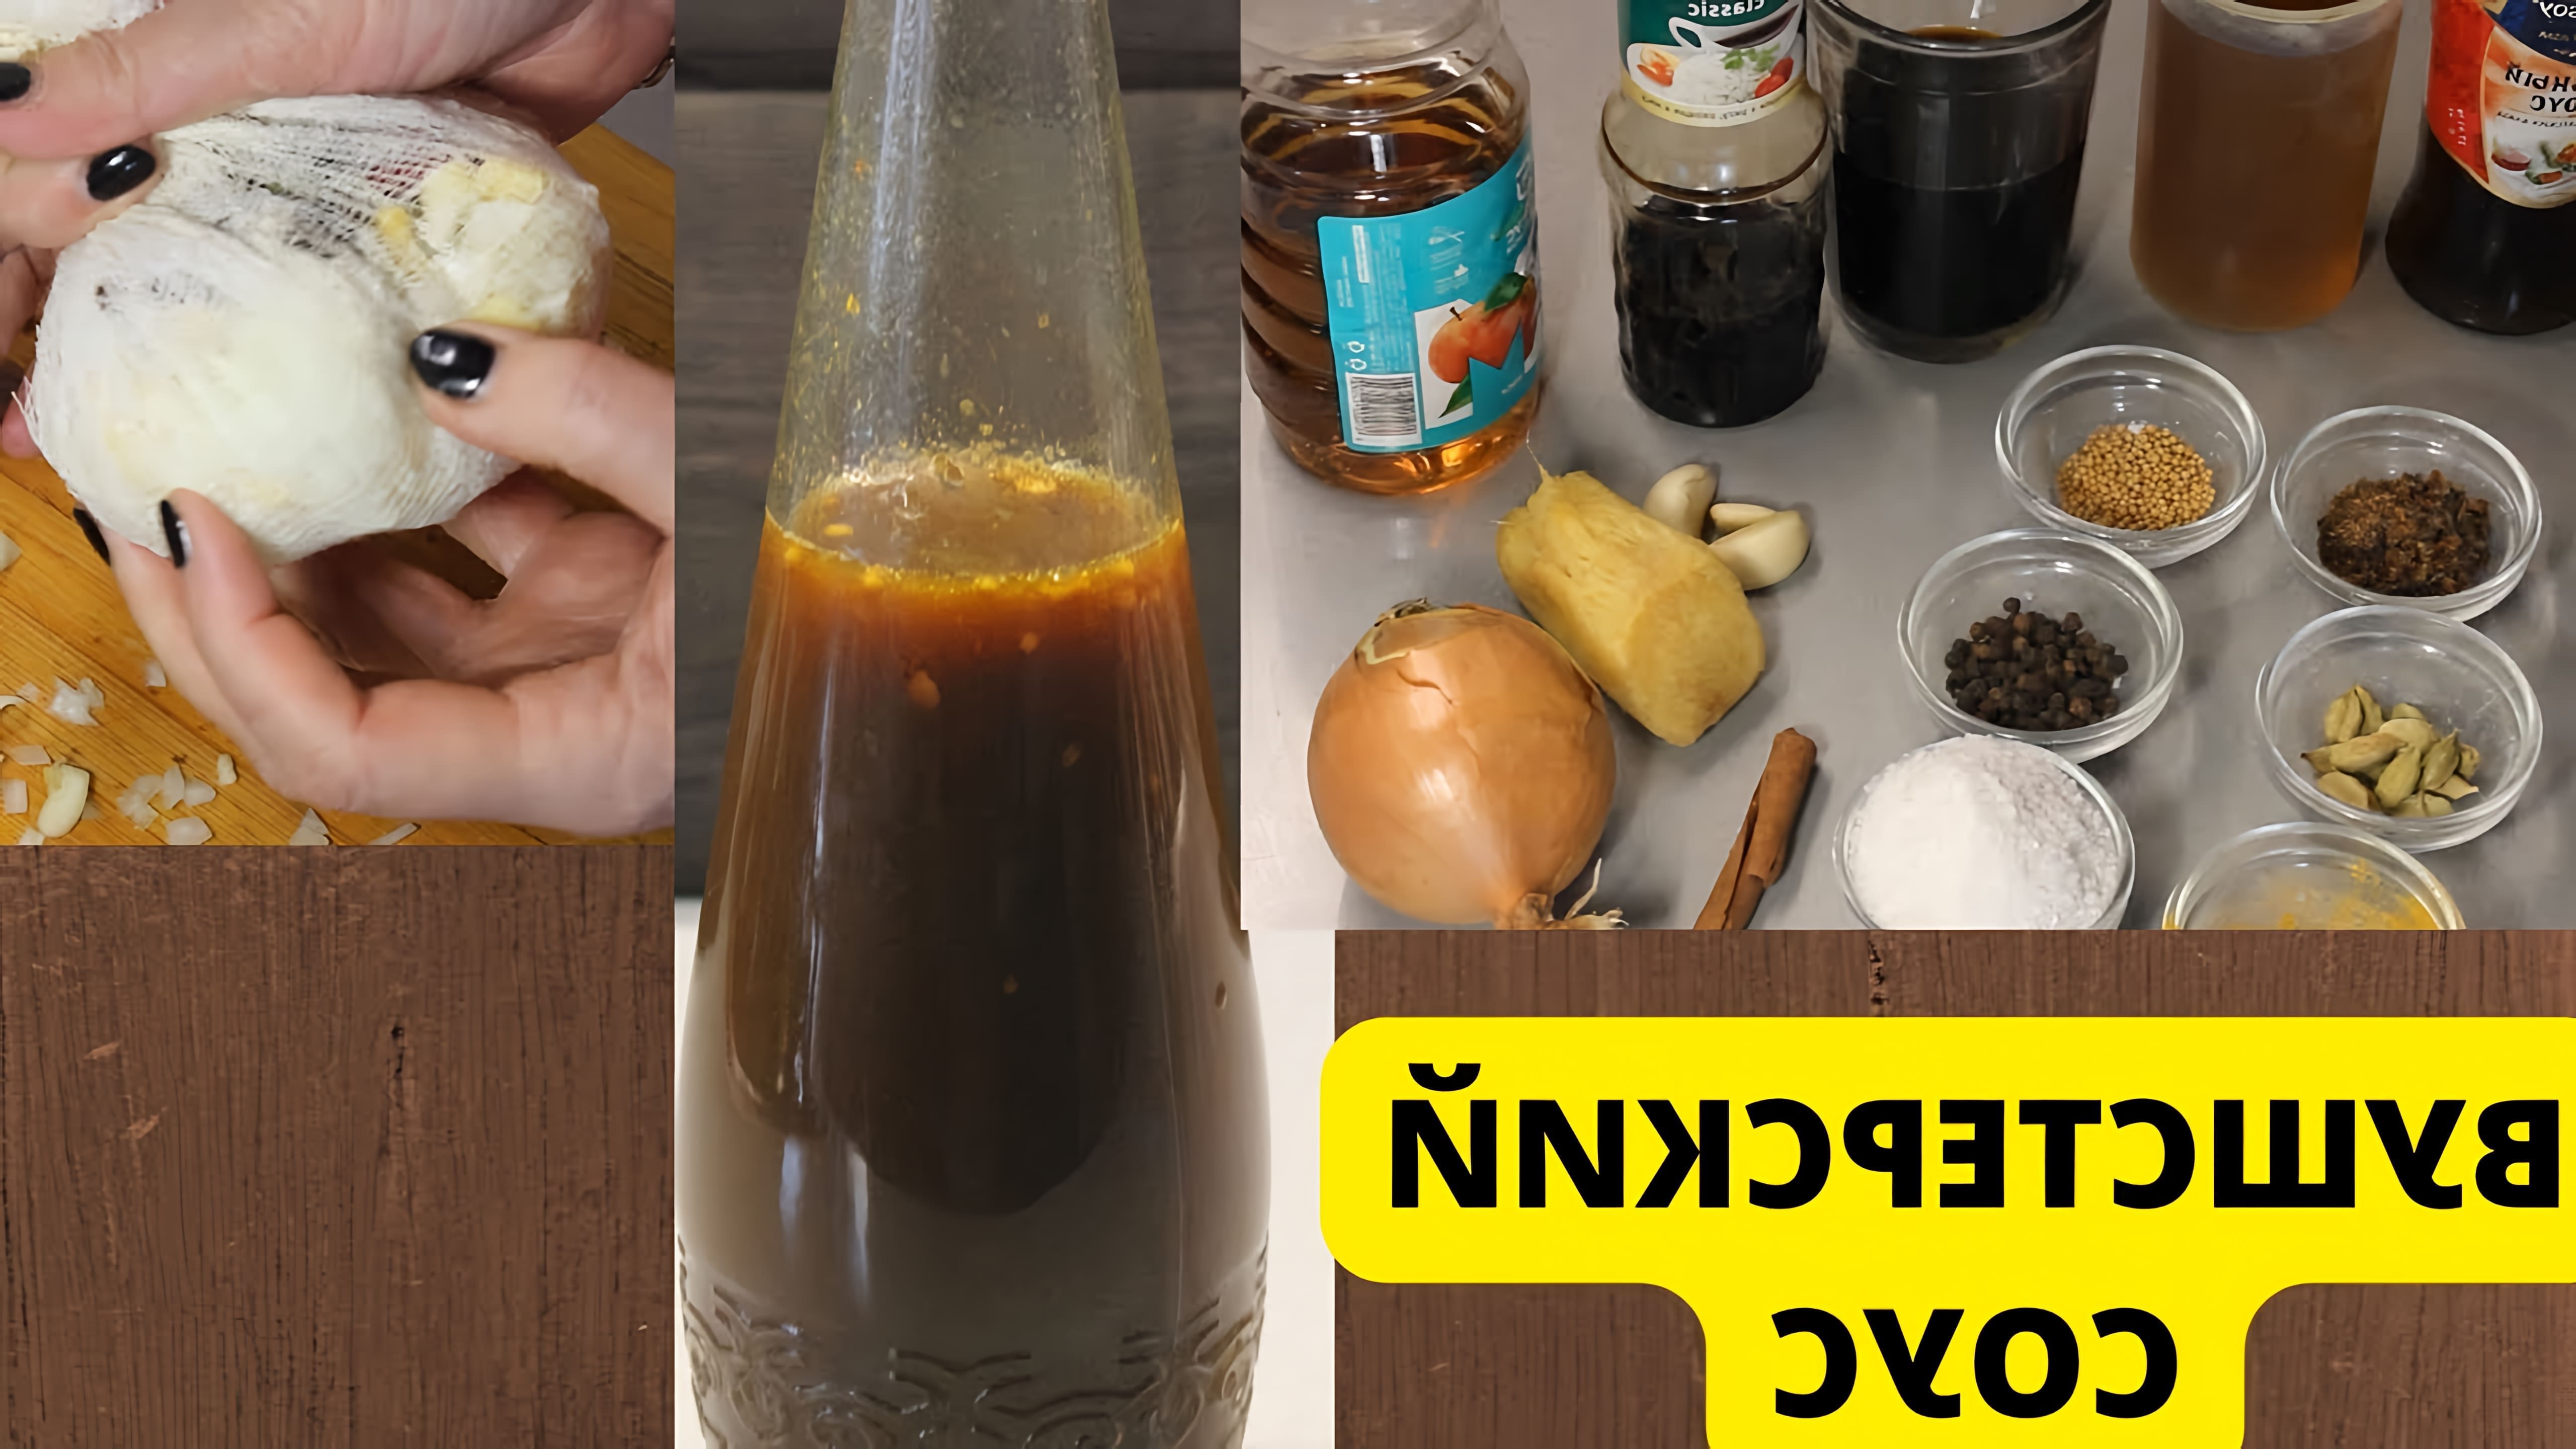 В этом видео демонстрируется процесс приготовления уштерского соуса своими руками